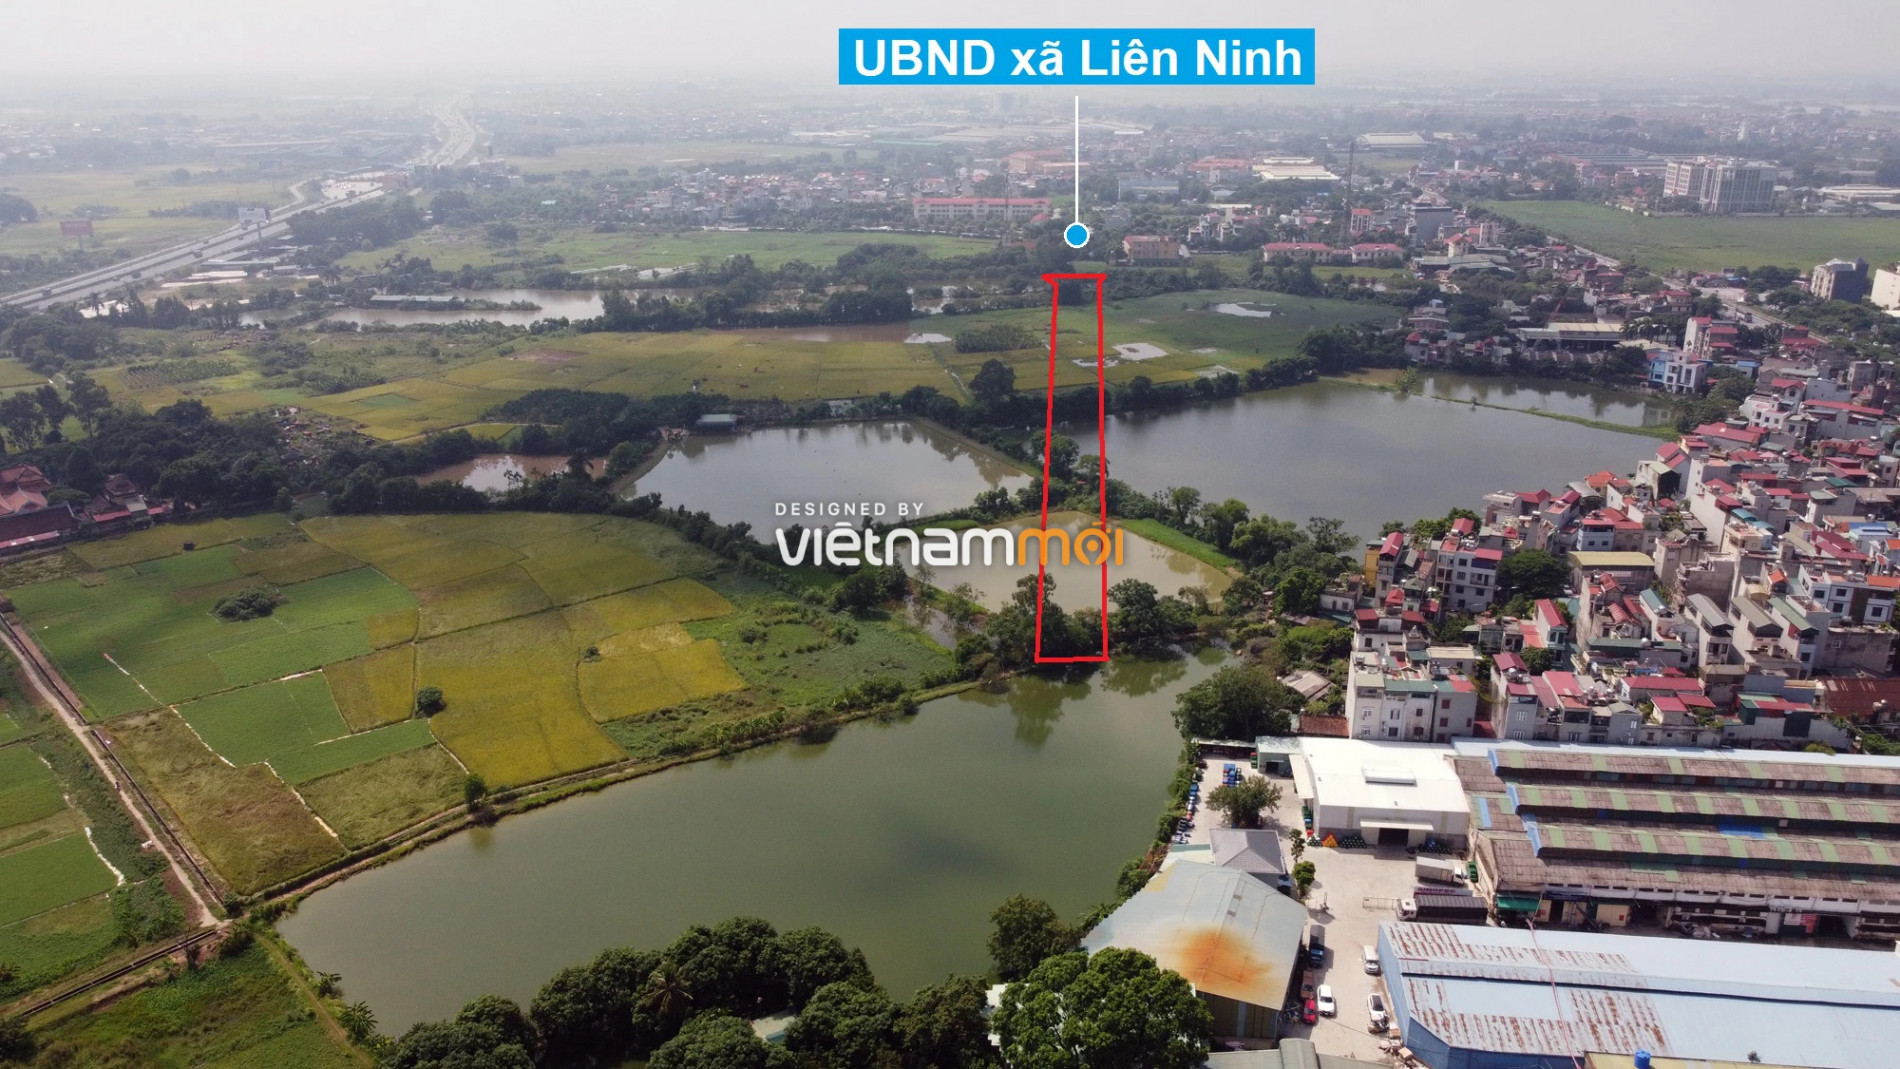  Những khu đất sắp thu hồi để mở đường ở xã Liên Ninh, Thanh Trì, Hà Nội (phần 6) - Ảnh 6.